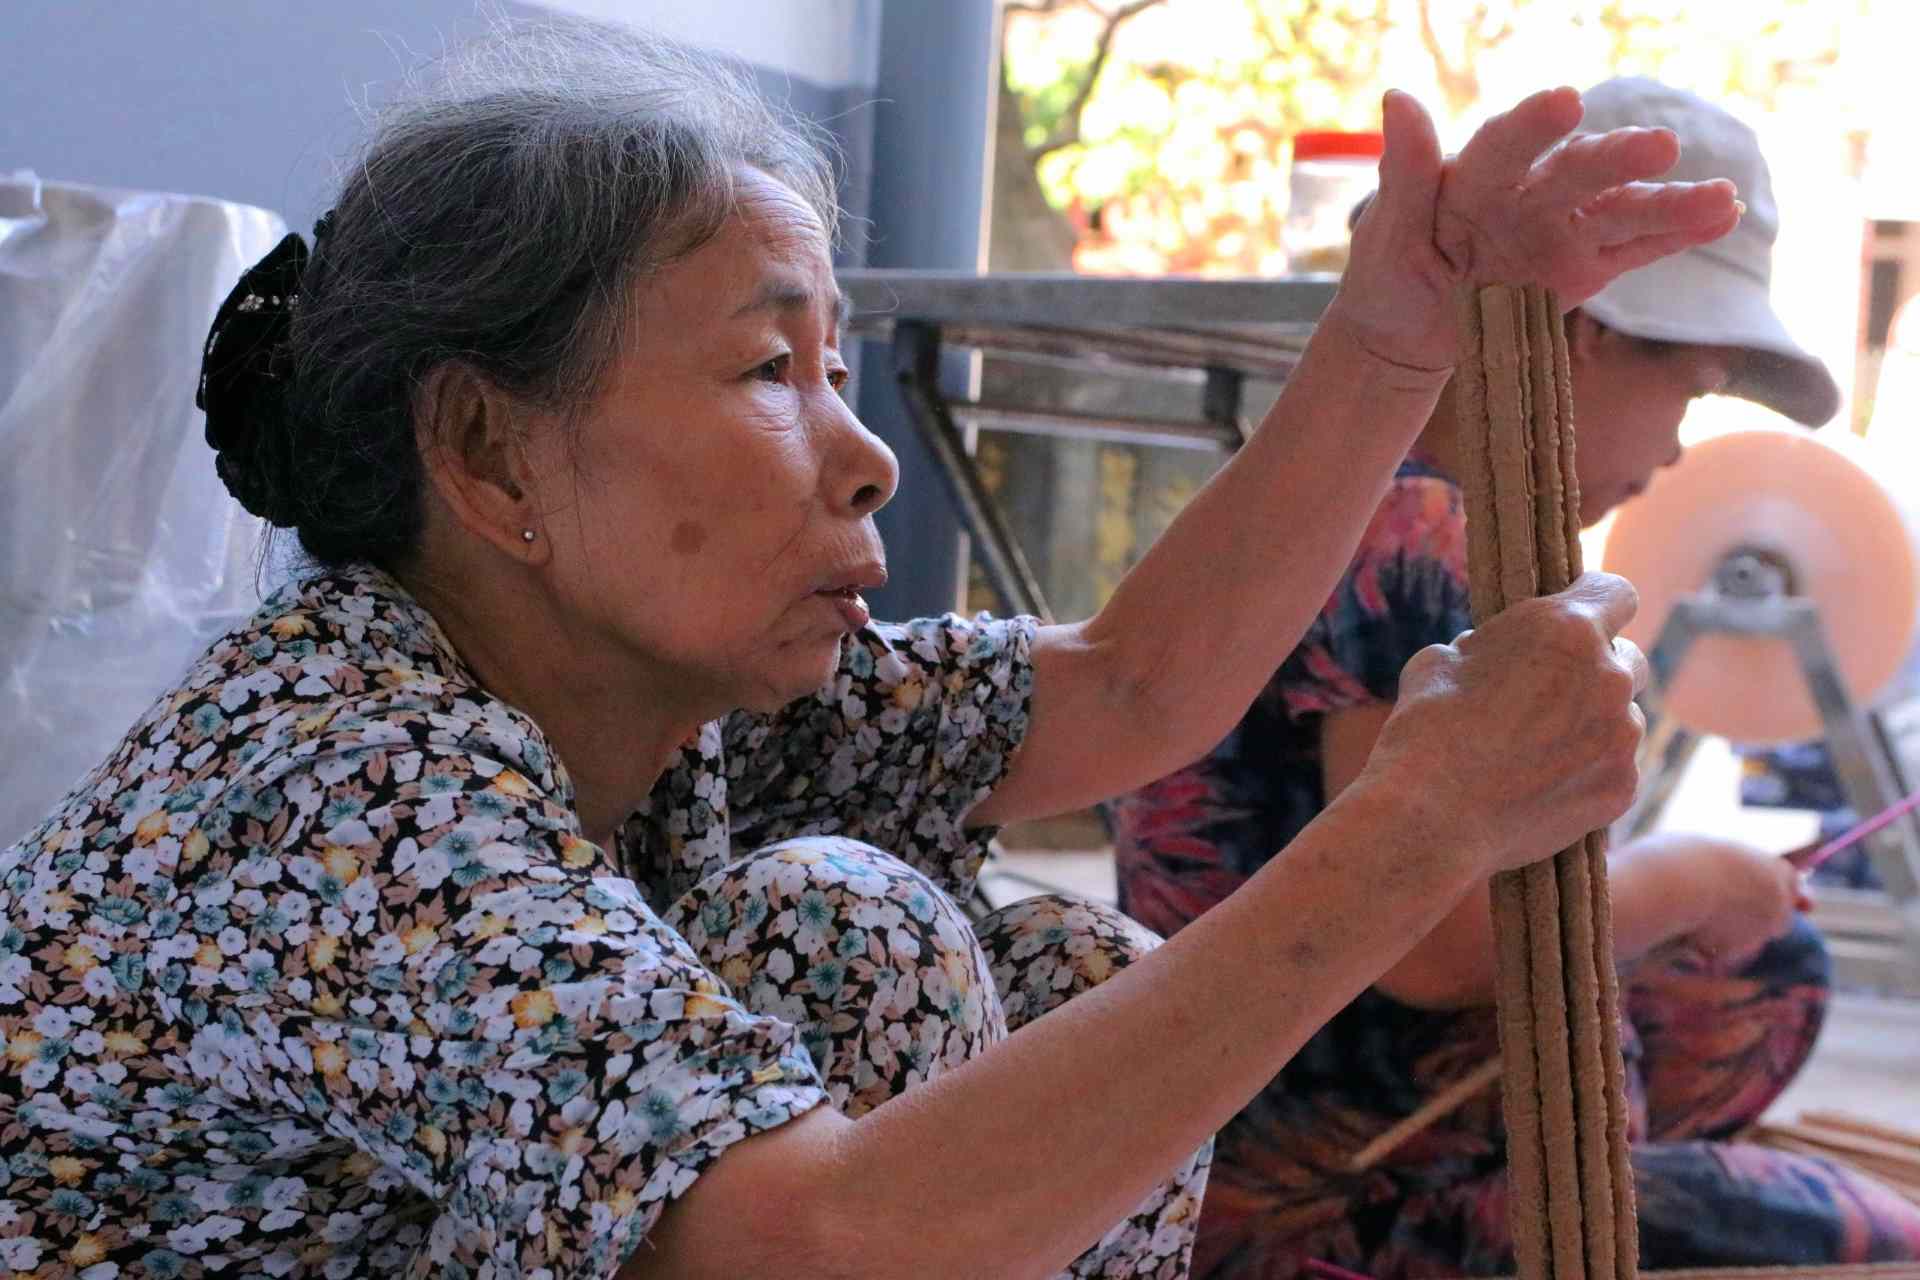 Trong quá trình tìm hiểu làng nghề truyền thống này, phóng viên chúng tôi đã được dịp trò chuyện cùng nhiều nghệ nhân có thâm niên trong nghề làm hương tại Thủy Xuân để tìm hiểu quy trình sản xuất. 